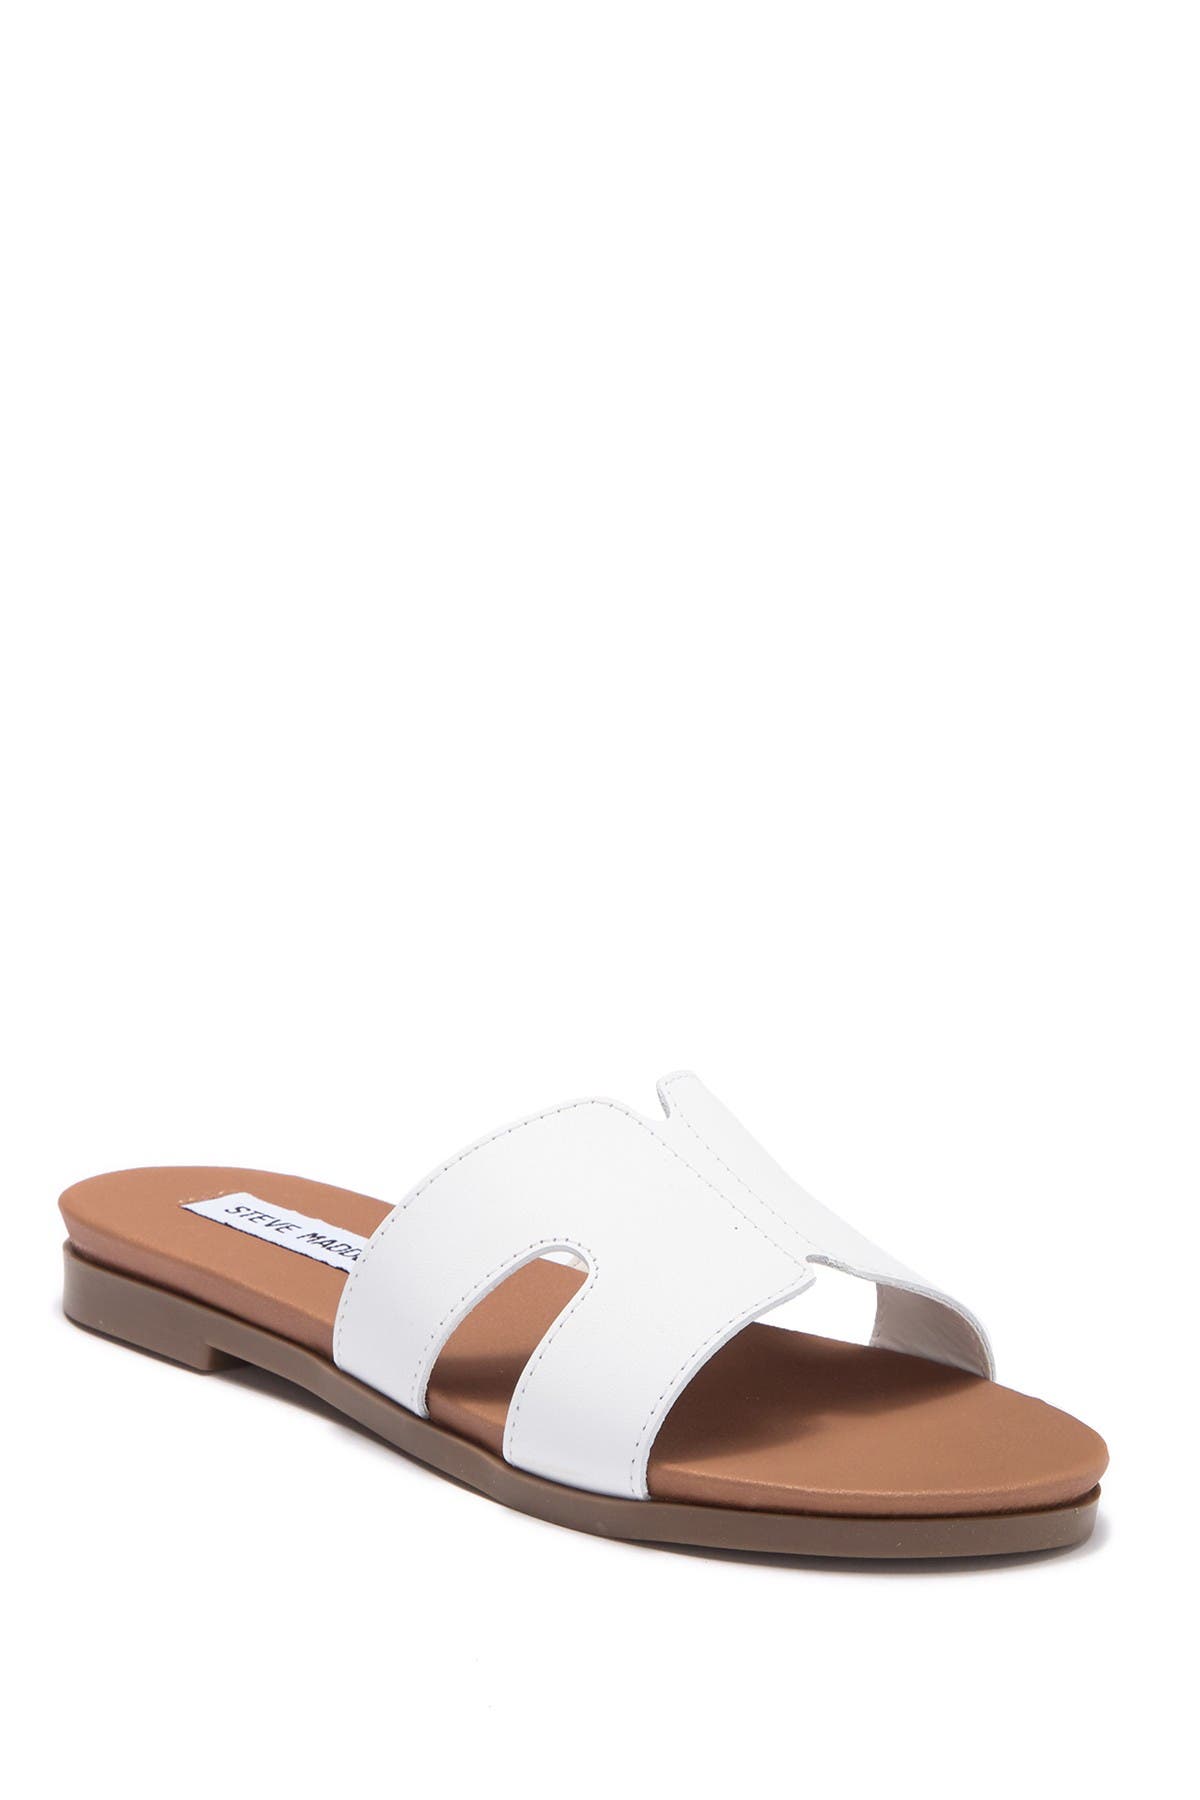 Steve Madden Hoku Slide Sandal In White Leat